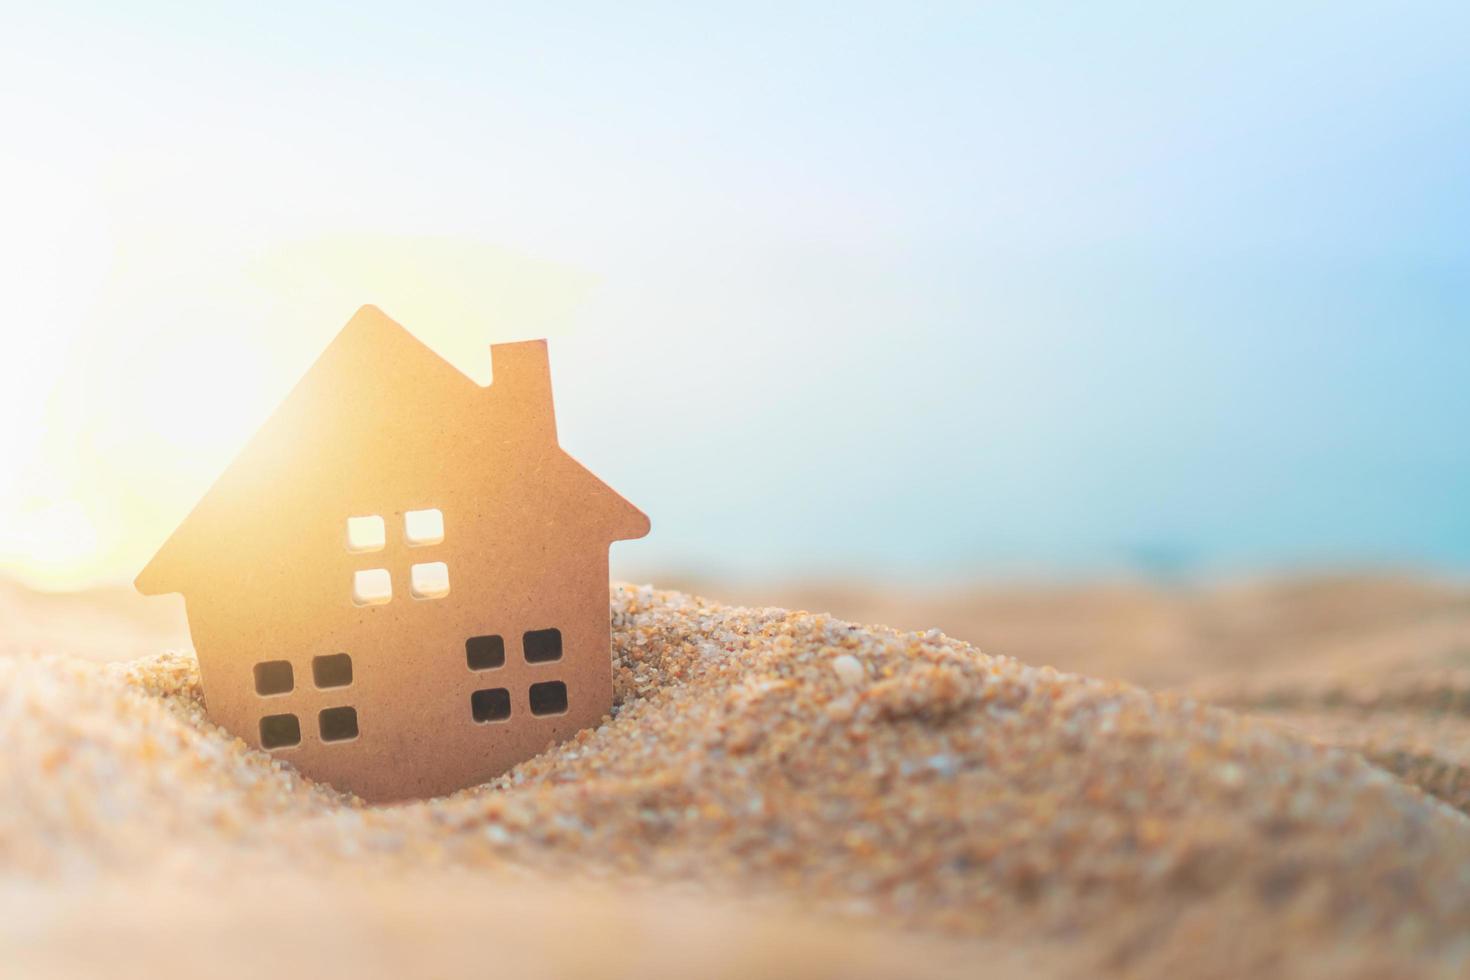 närbild av en liten hemmodell i sanden med solljusbakgrund foto